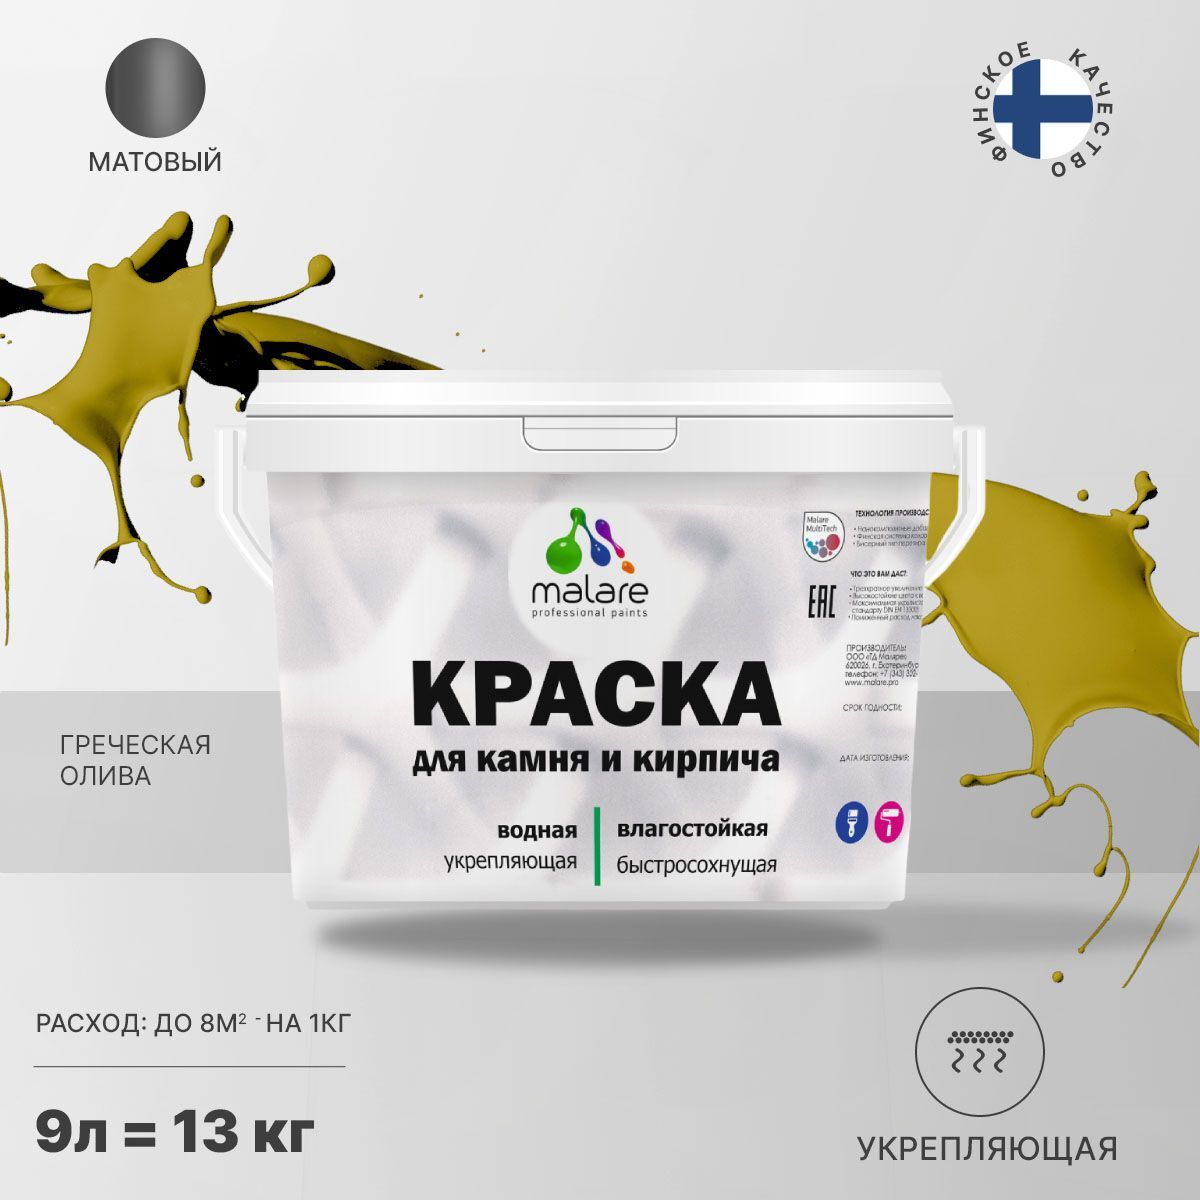 Краска Malare специализированная Акриловая, 13 кг греческая олива